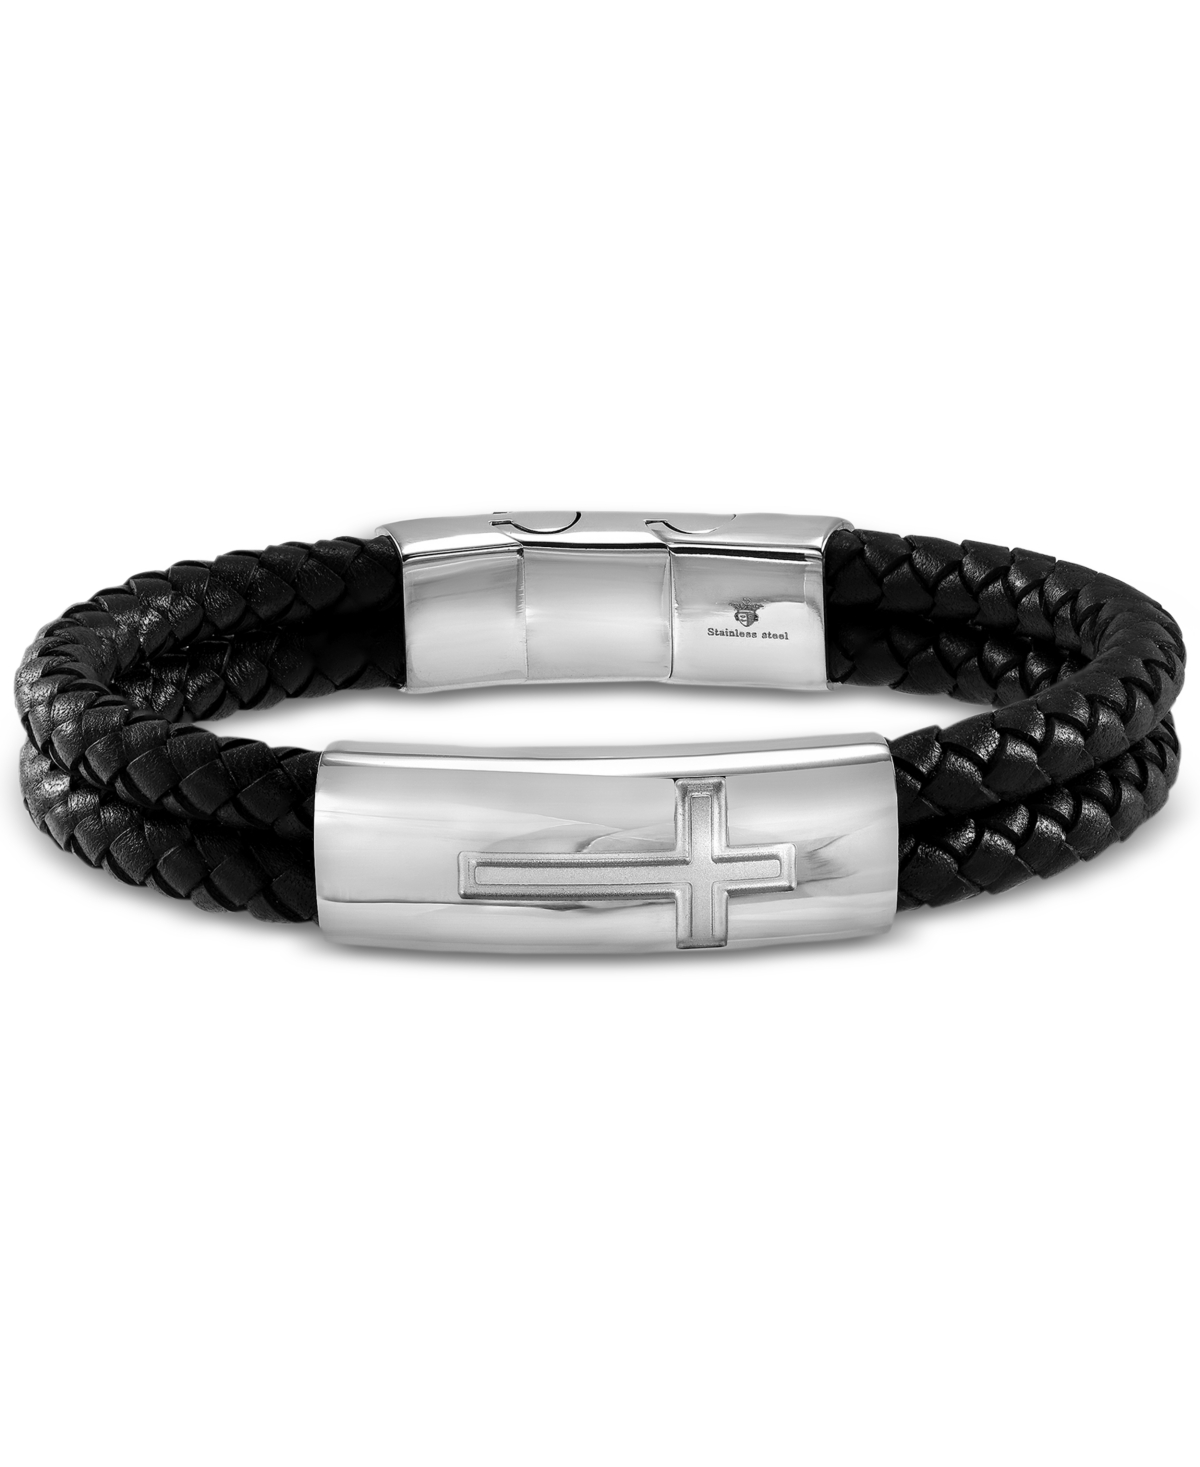 Men's Double Strand Leather Cross Bracelet in Stainless Steel - Steel/Black